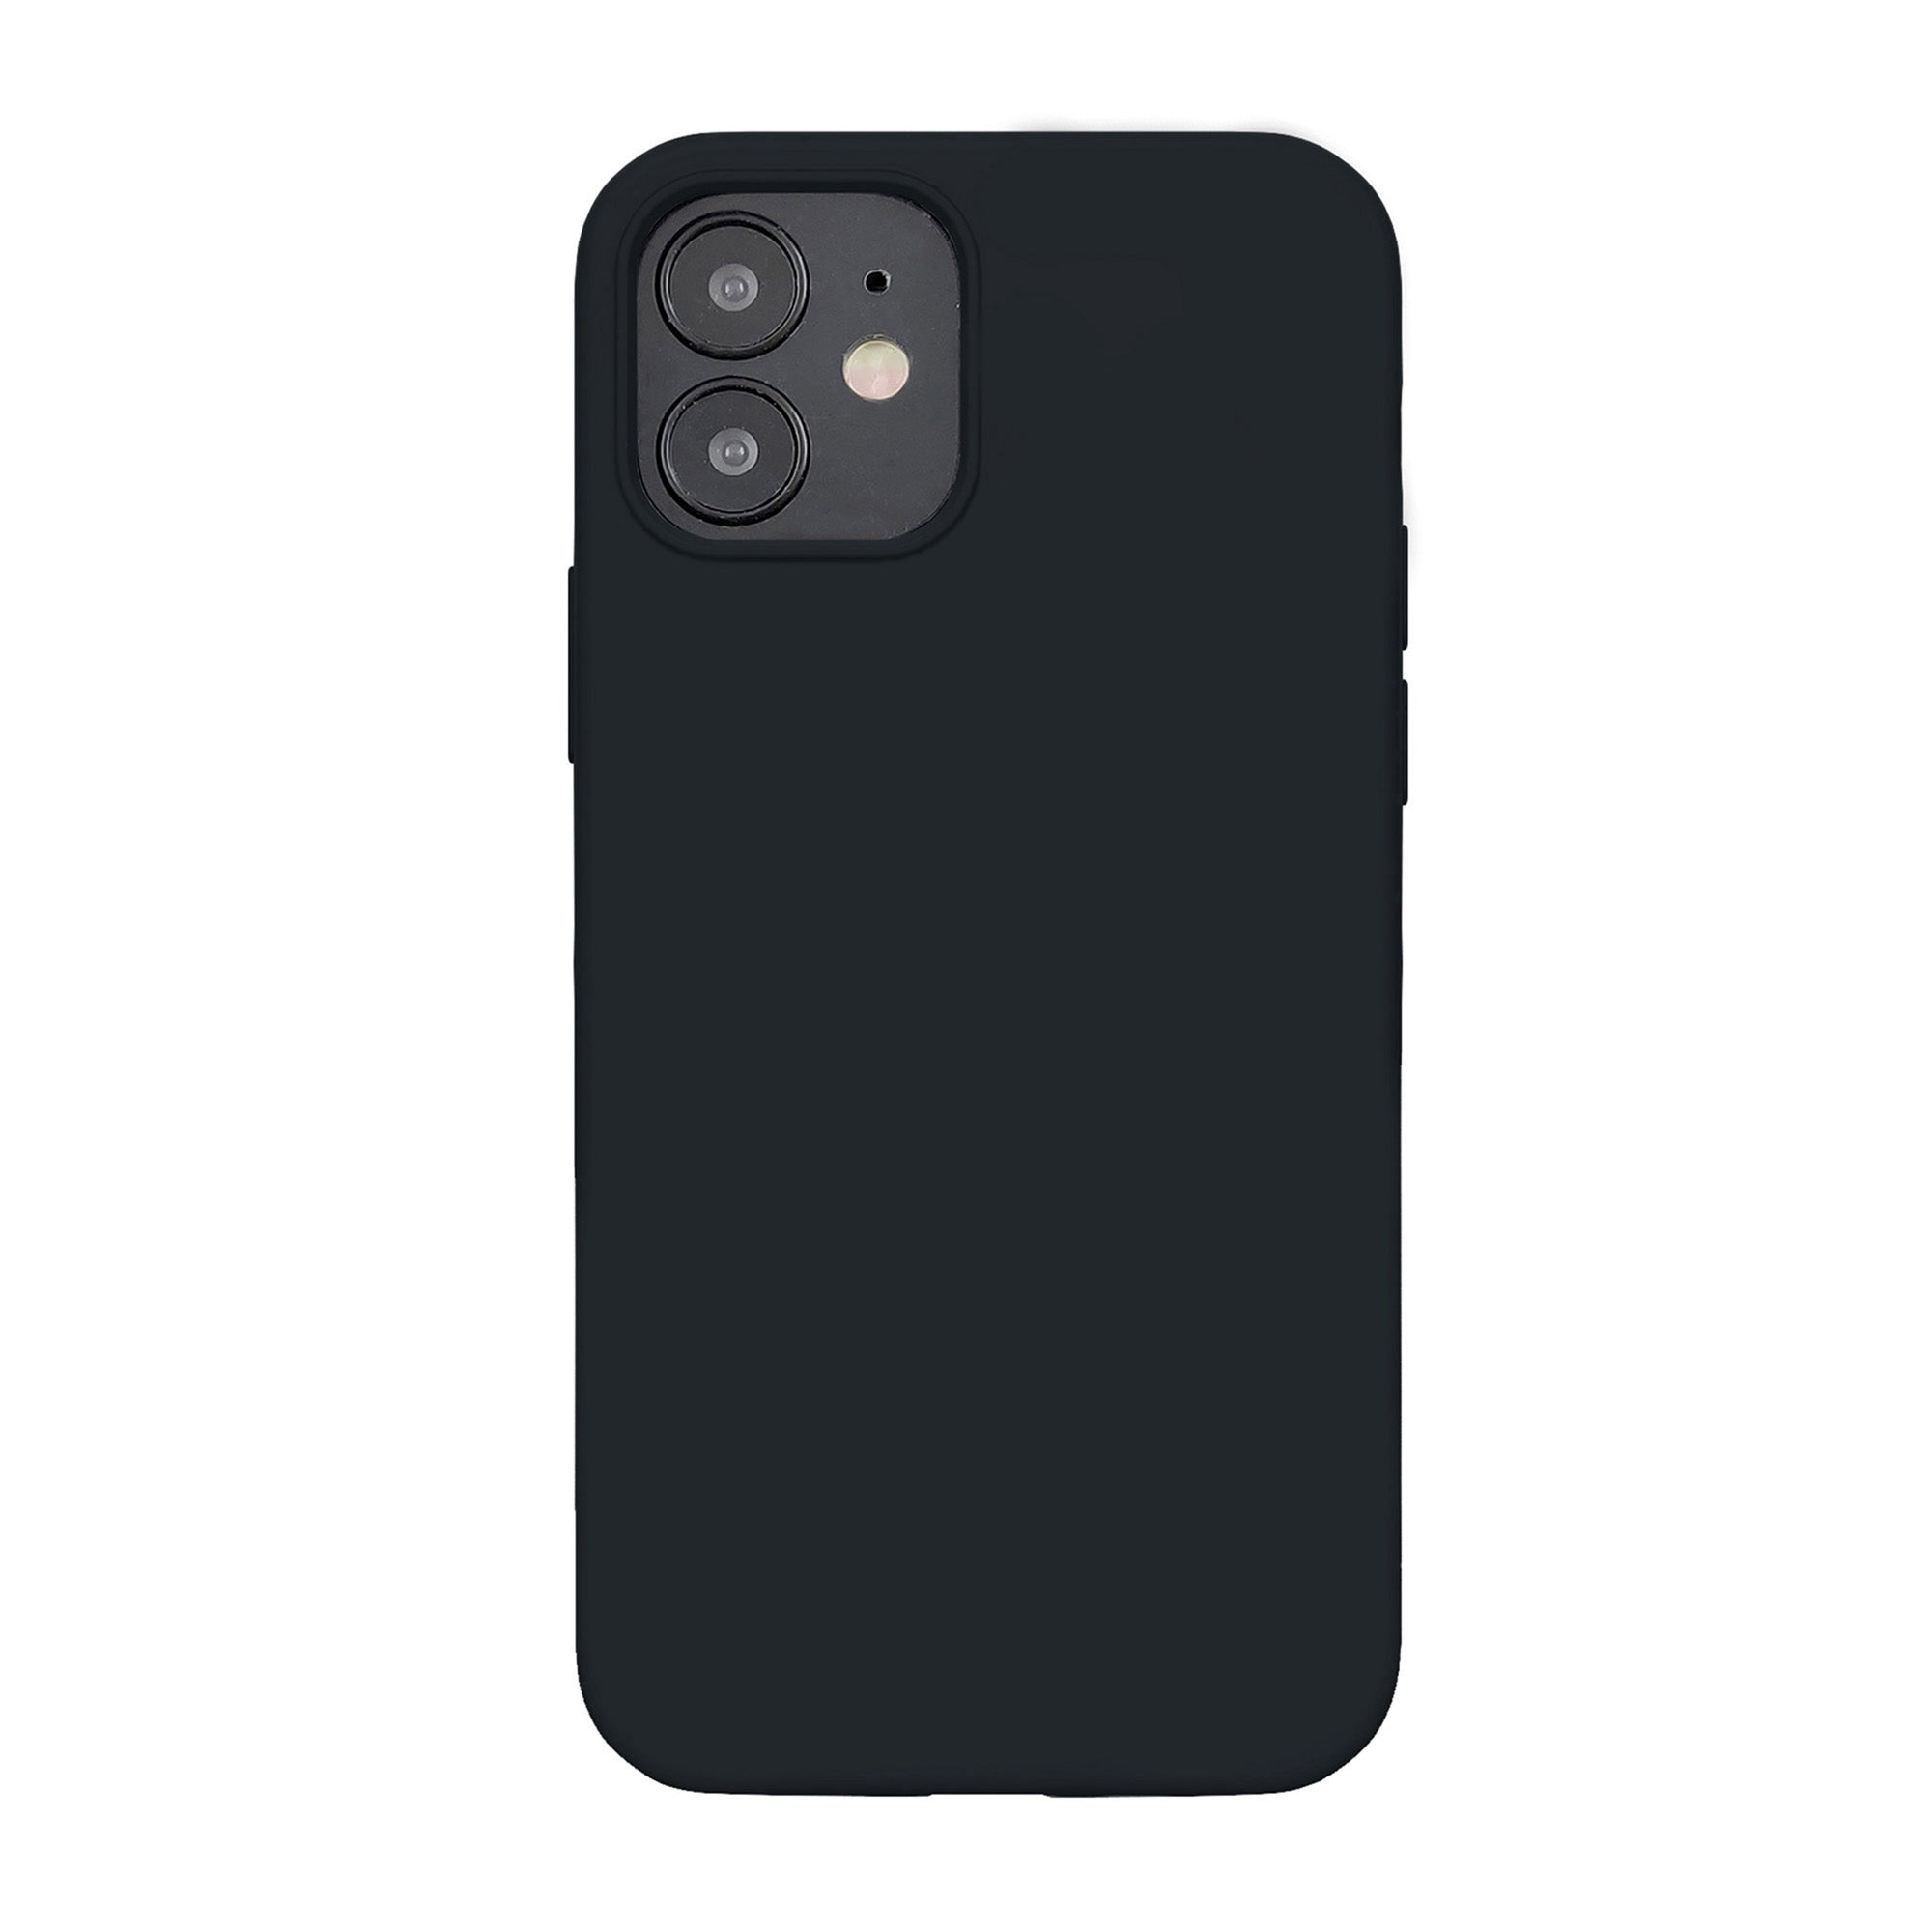 iPhone 12 Mini Uunique Black Liquid Silicone Case - 15-07595